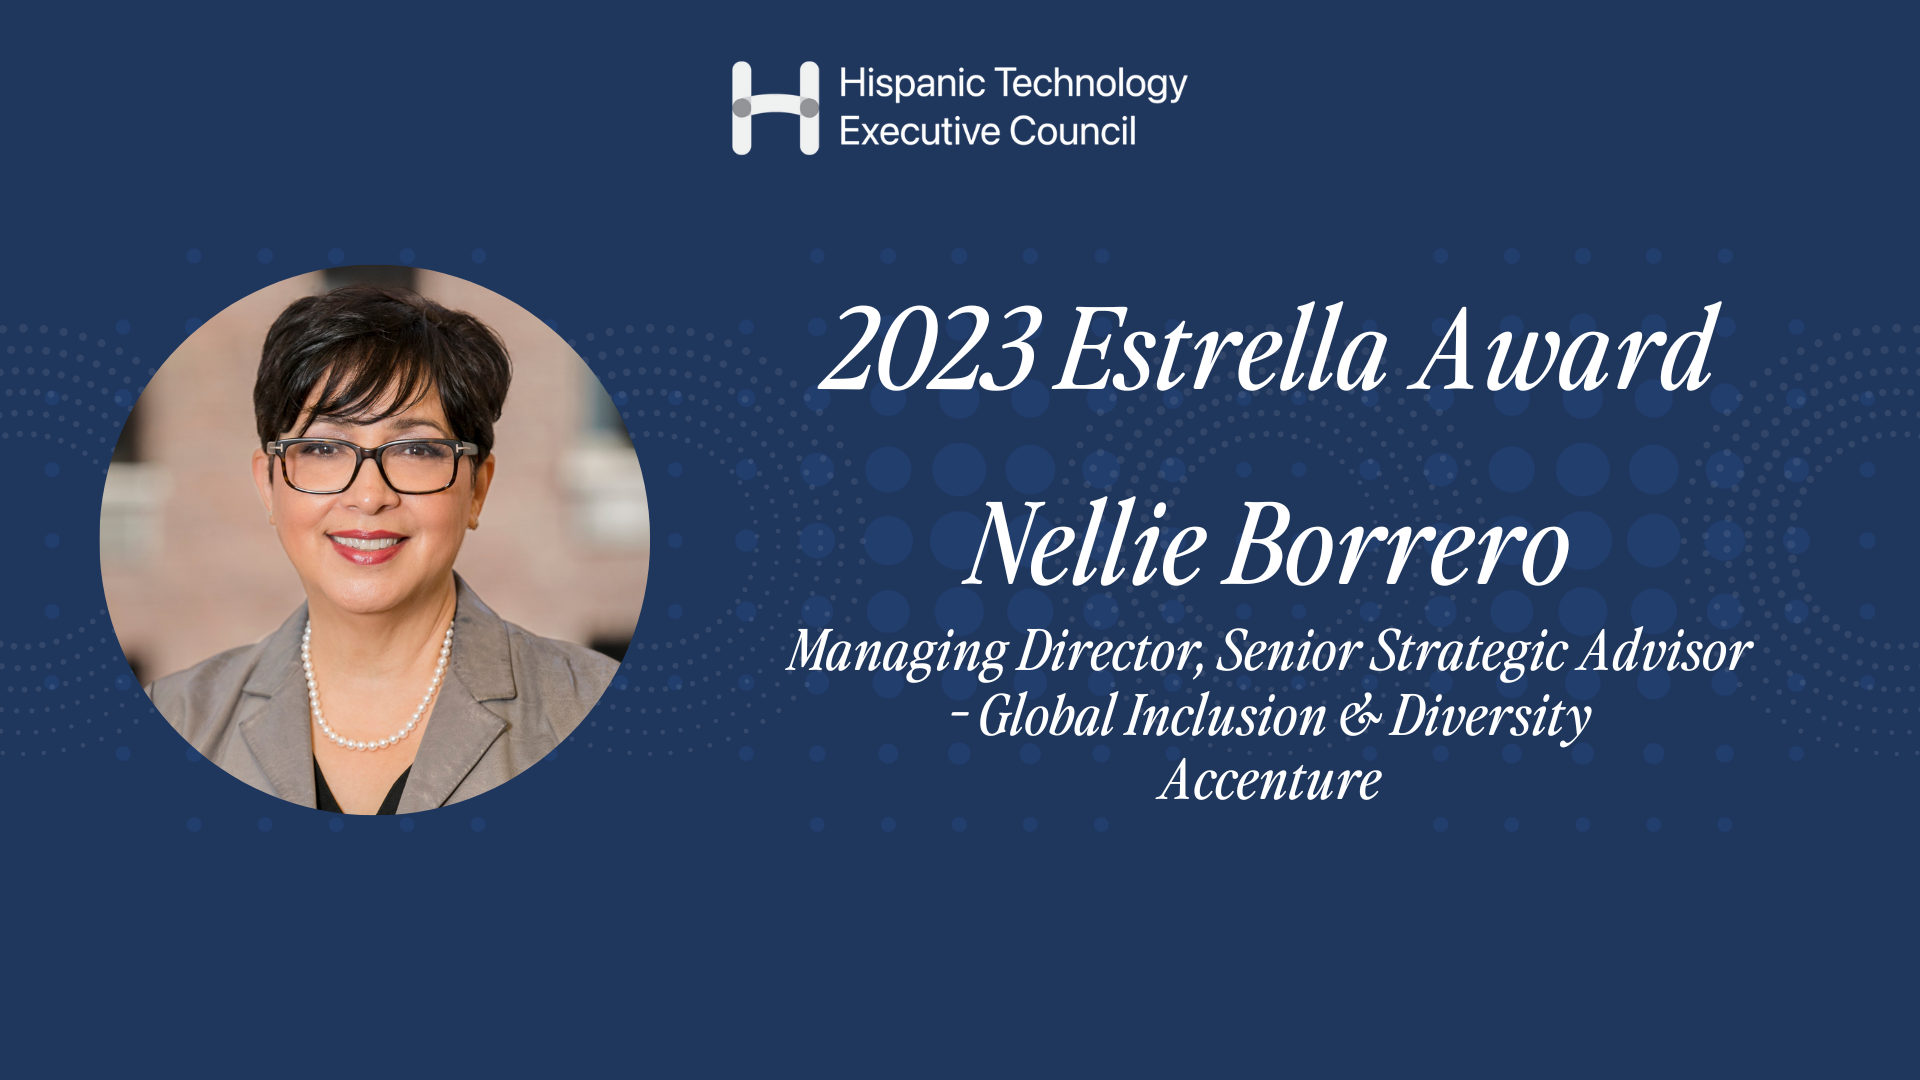 HITEC Recognizes Nellie Borrero, Accenture Managing Director and Global Inclusion & Diversity Senior Strategic Advisor Lead, as the 2023 HITEC Estrella Award Recipient